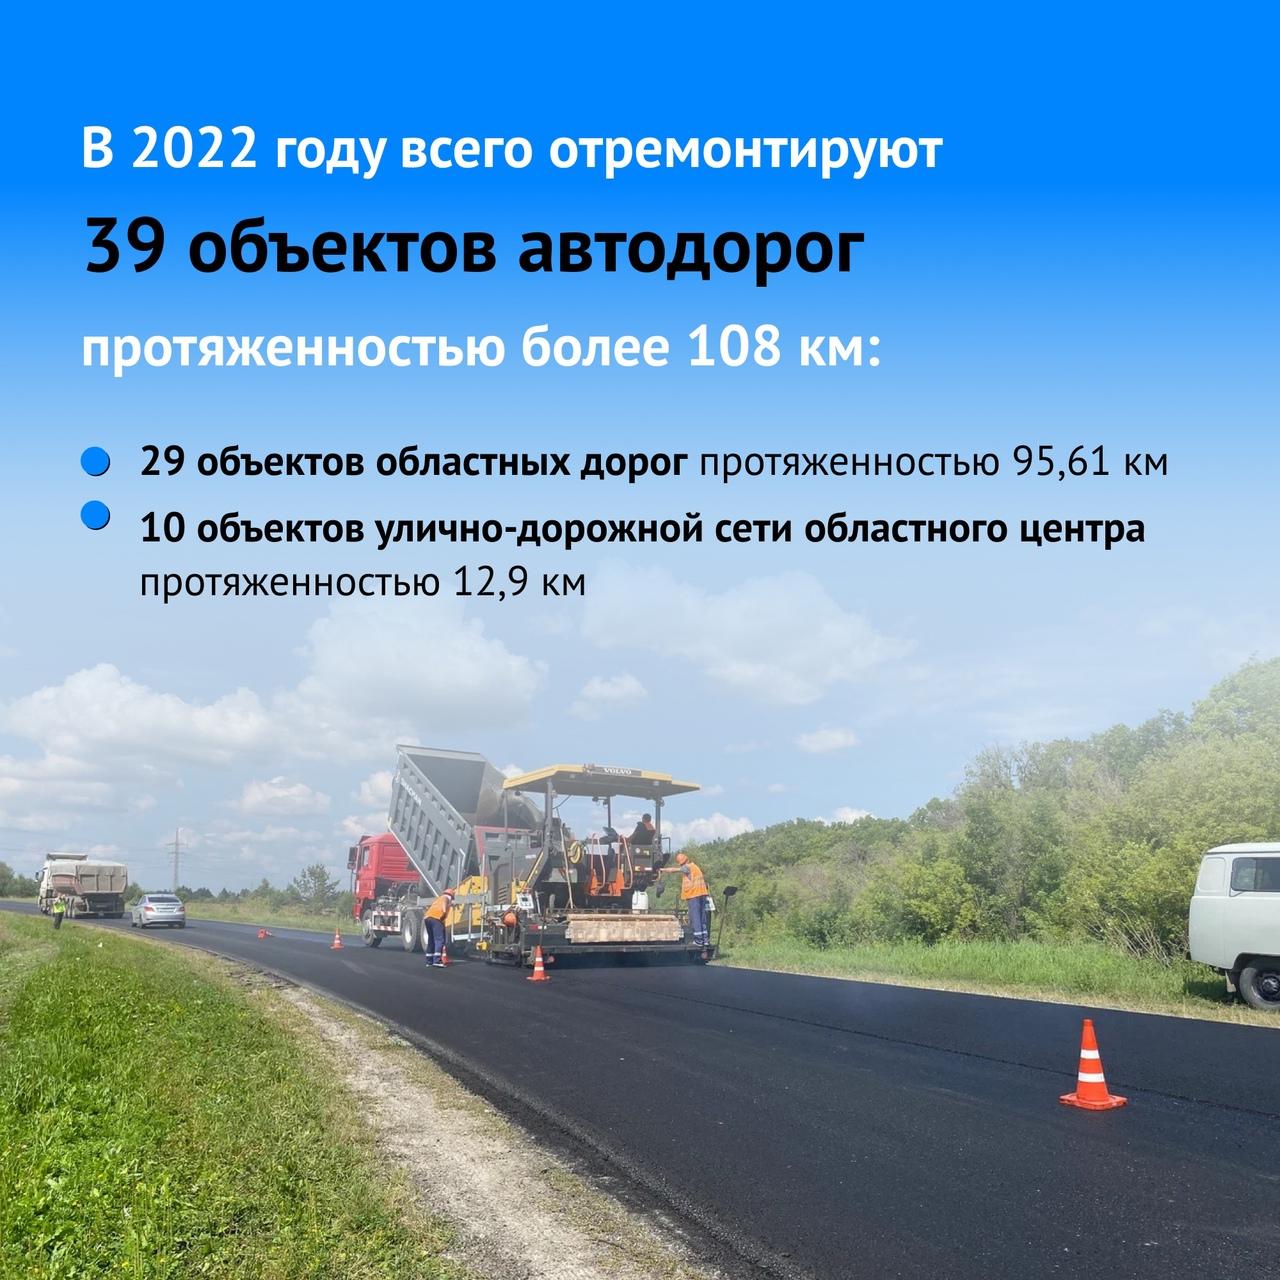 В Ульяновской области стартовала неделя нацпроекта «Безопасные качественные дороги».